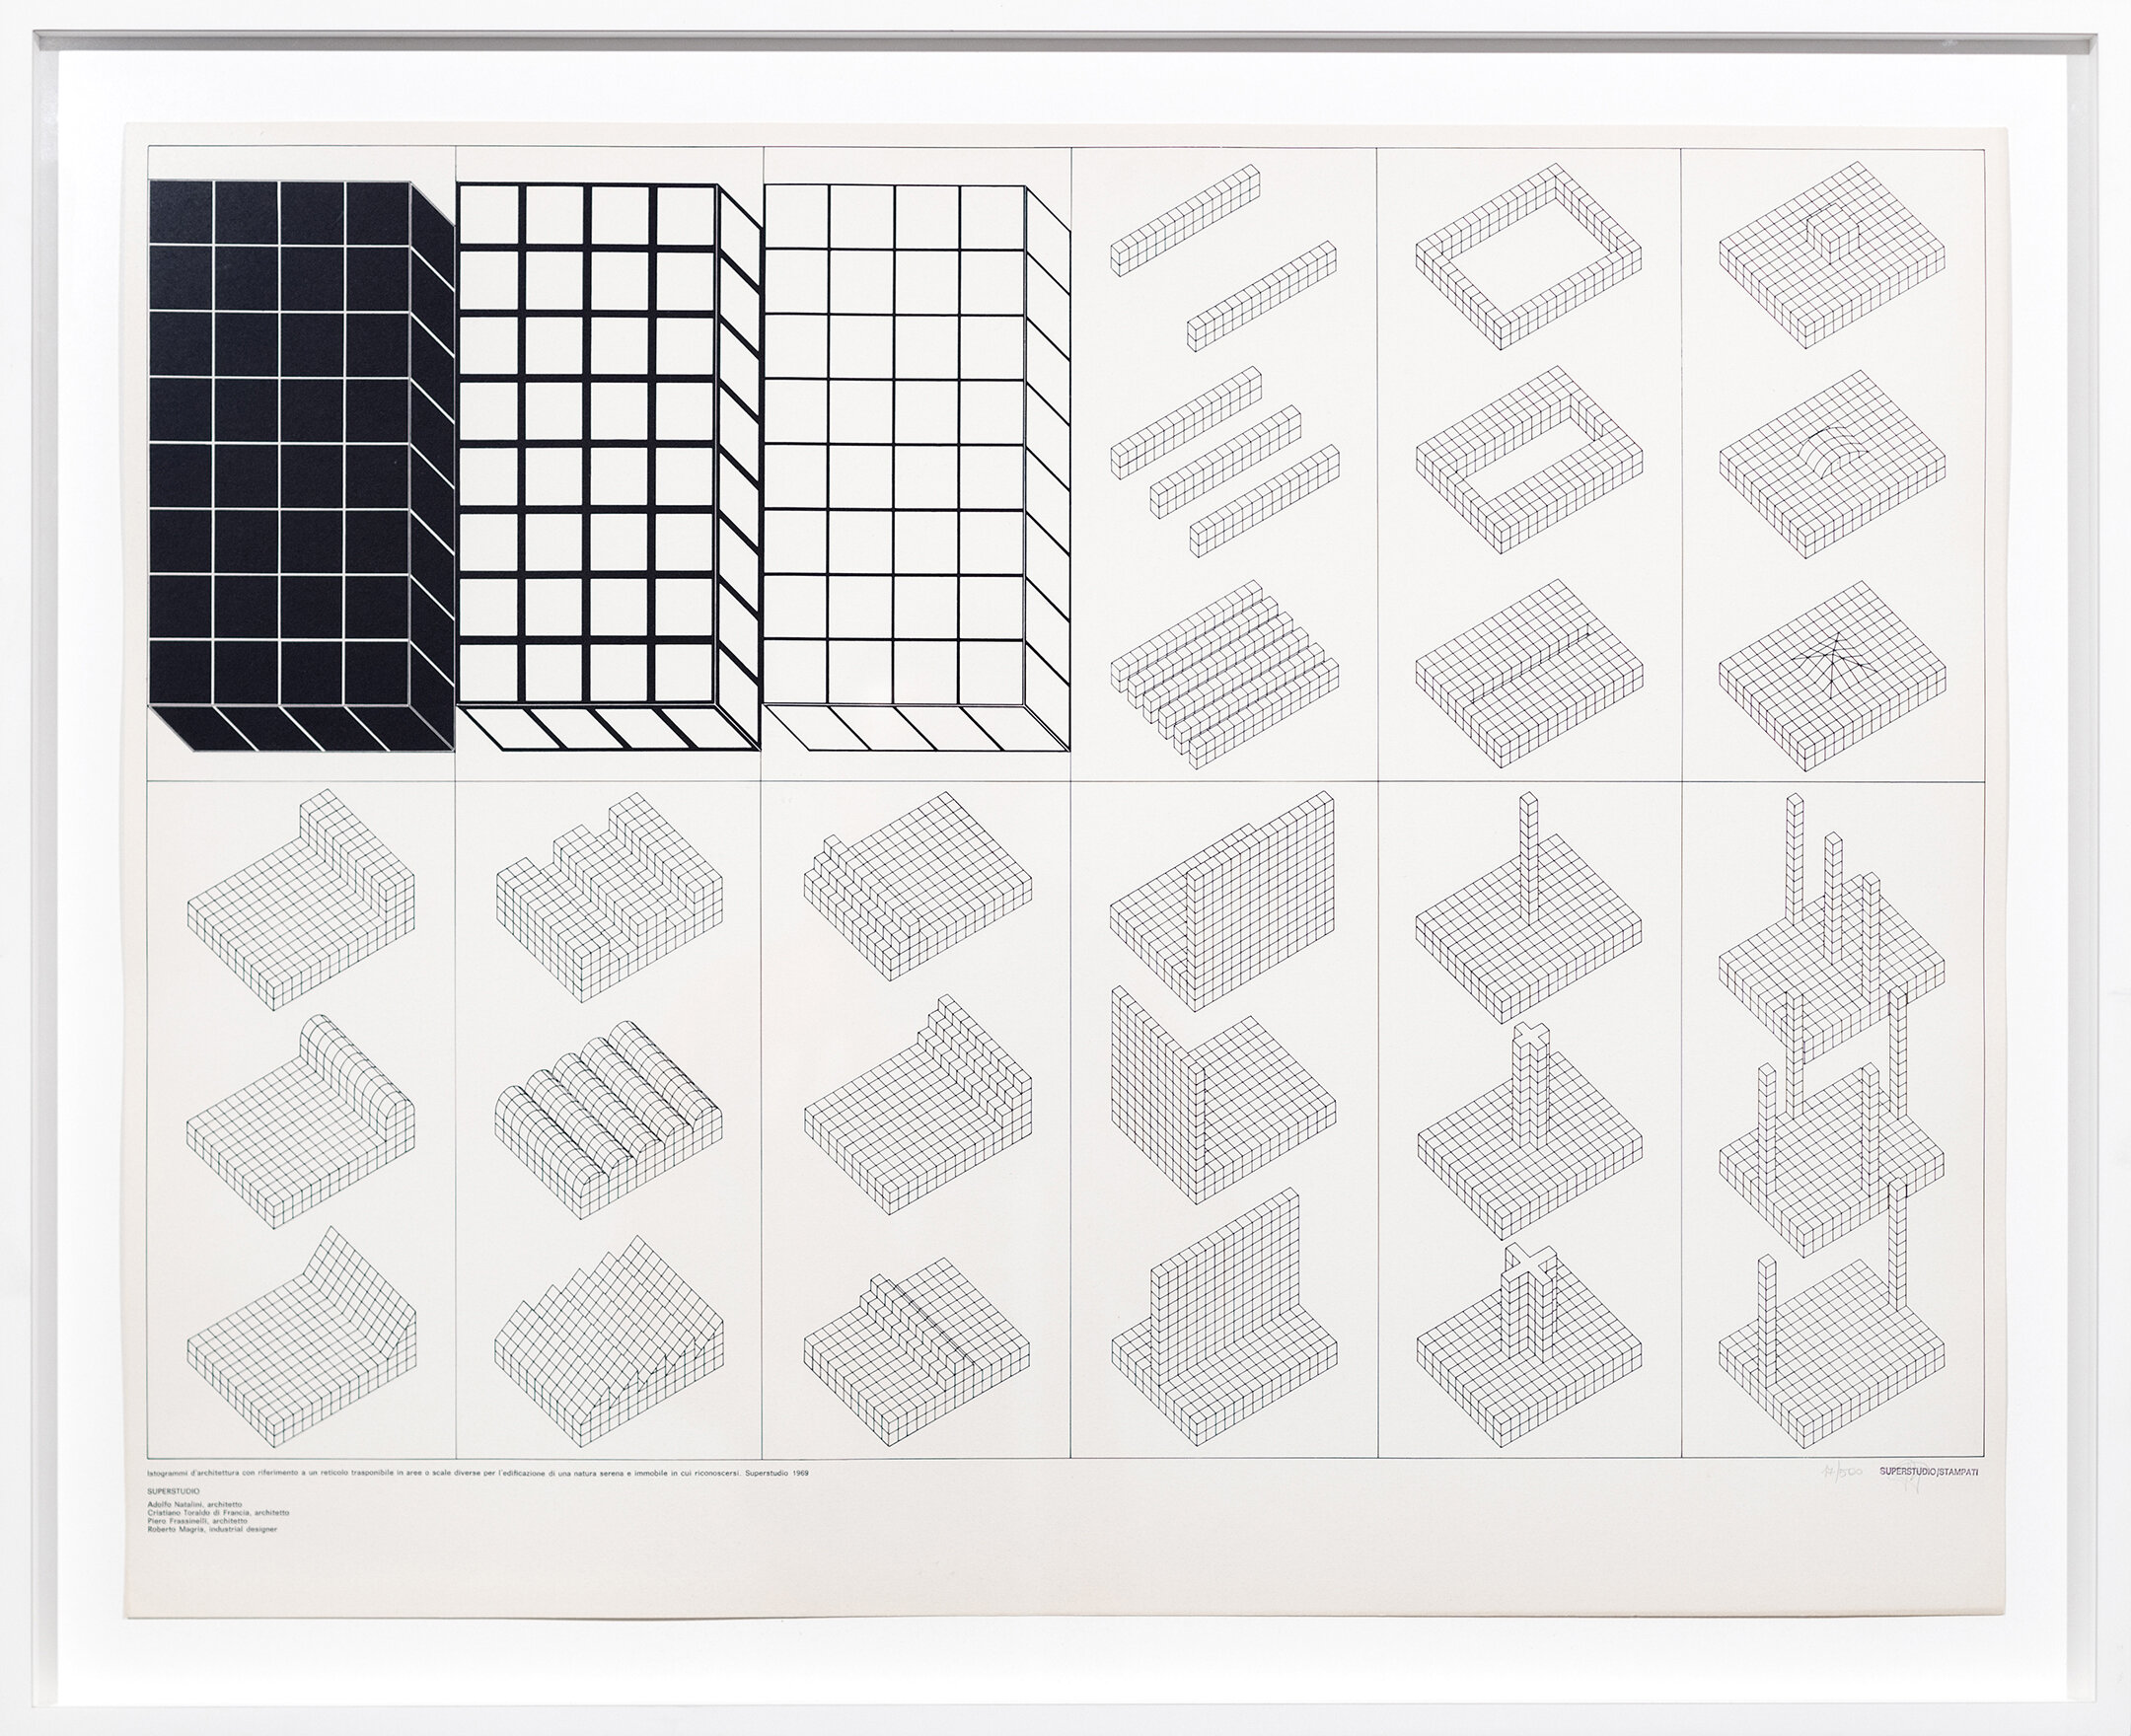 Superstudio, Istogrammi d'architettura con riferimento a un reticolo in aree o scale diverse par l'edificazione di una natura serena e immobile in cui riconoscersi, 1969